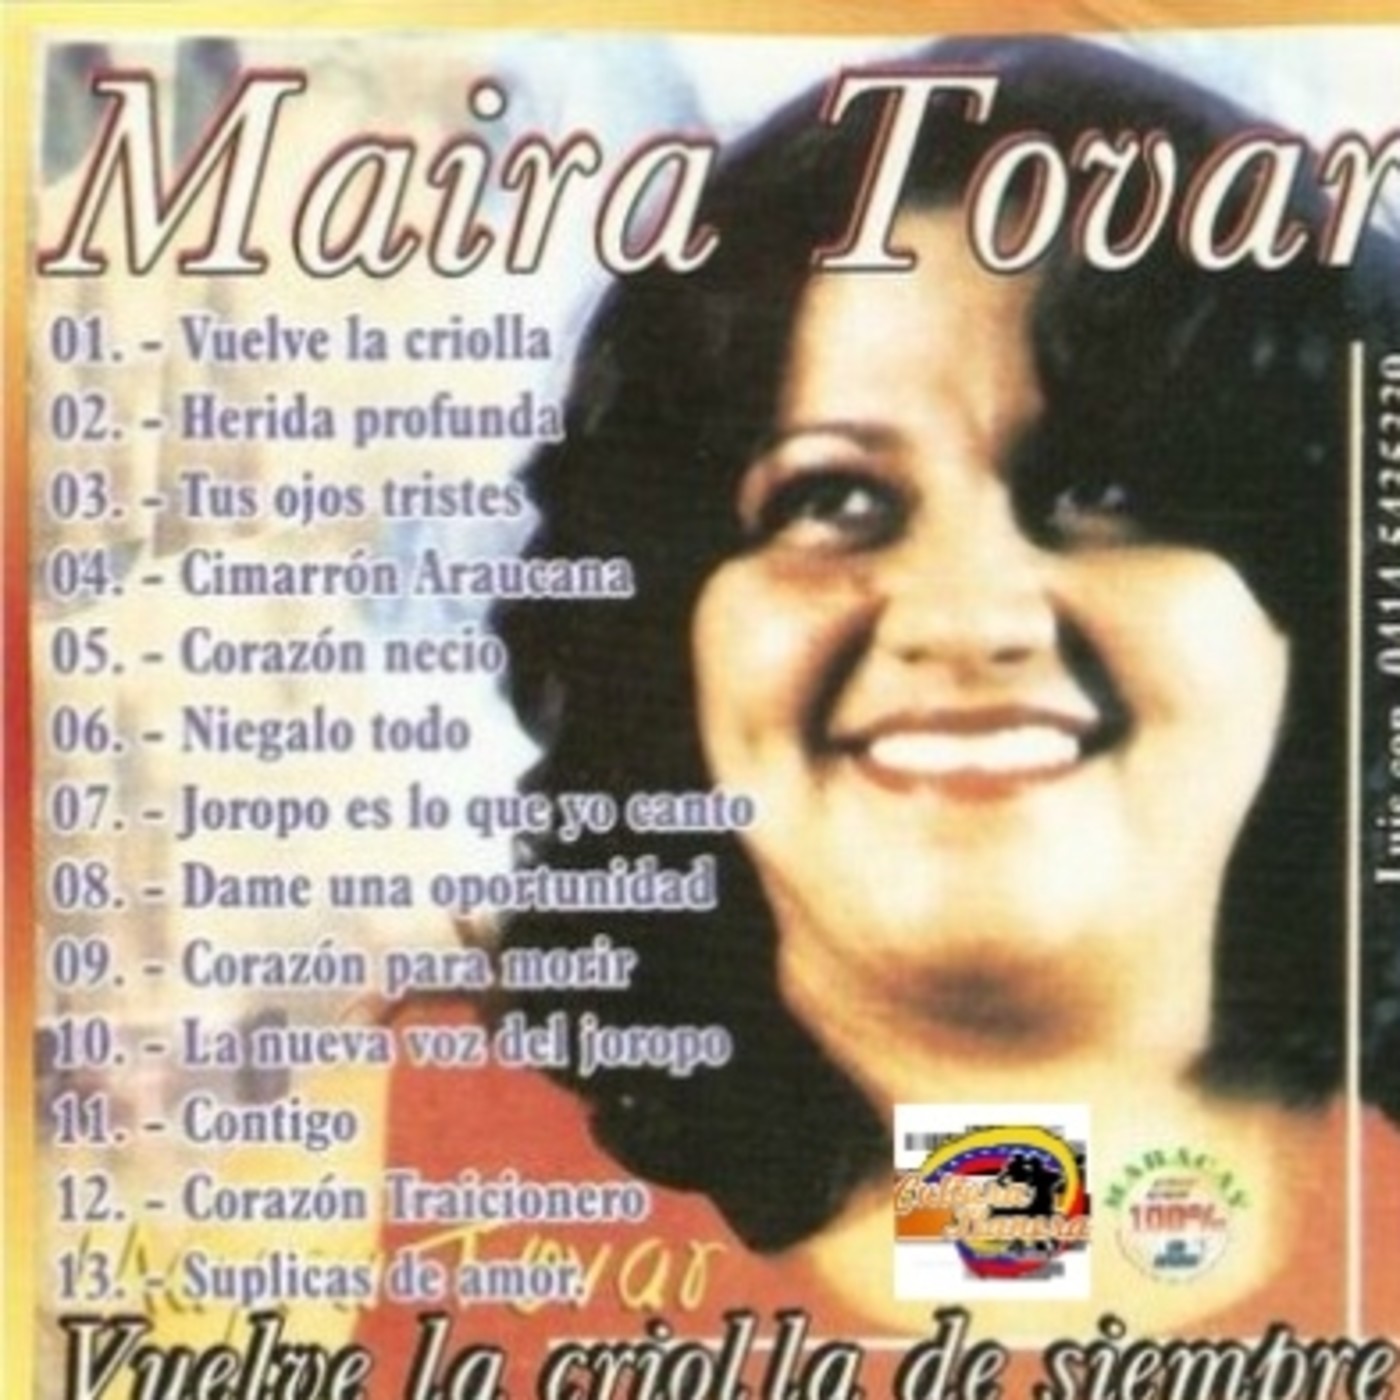 Mayra Tovar "La criolla de siempre"